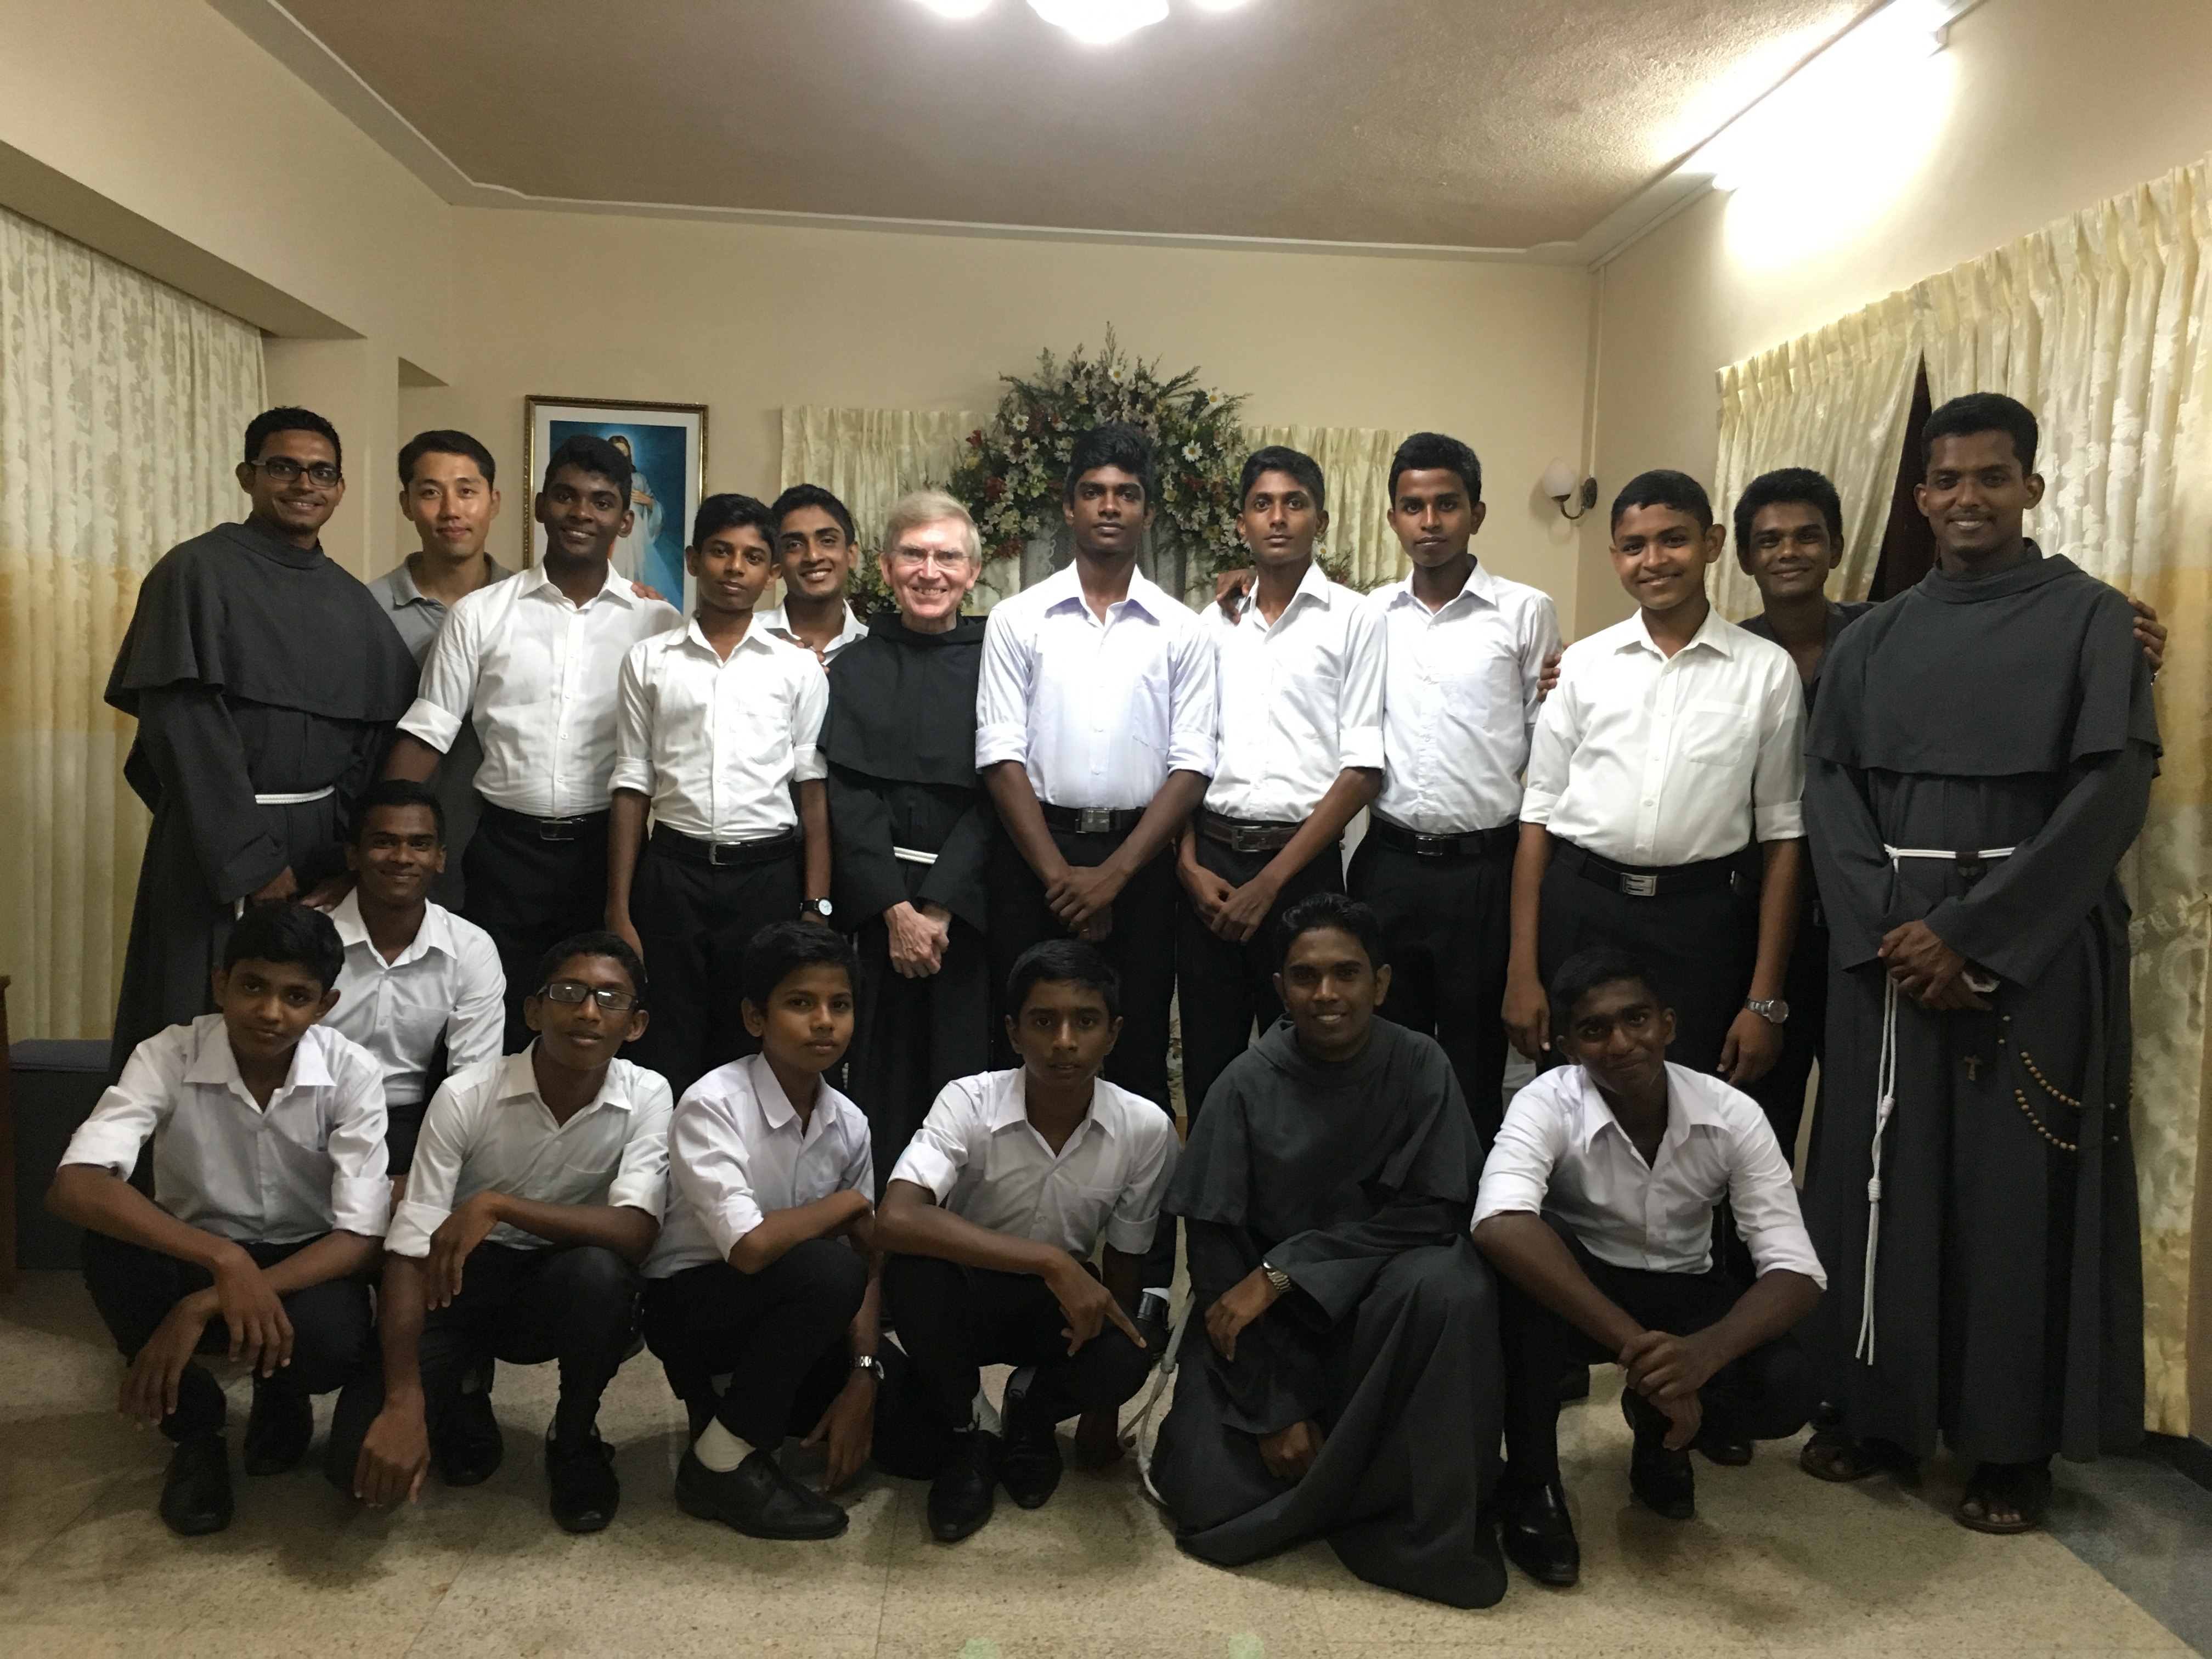 FMA Continues Education in Sri Lanka